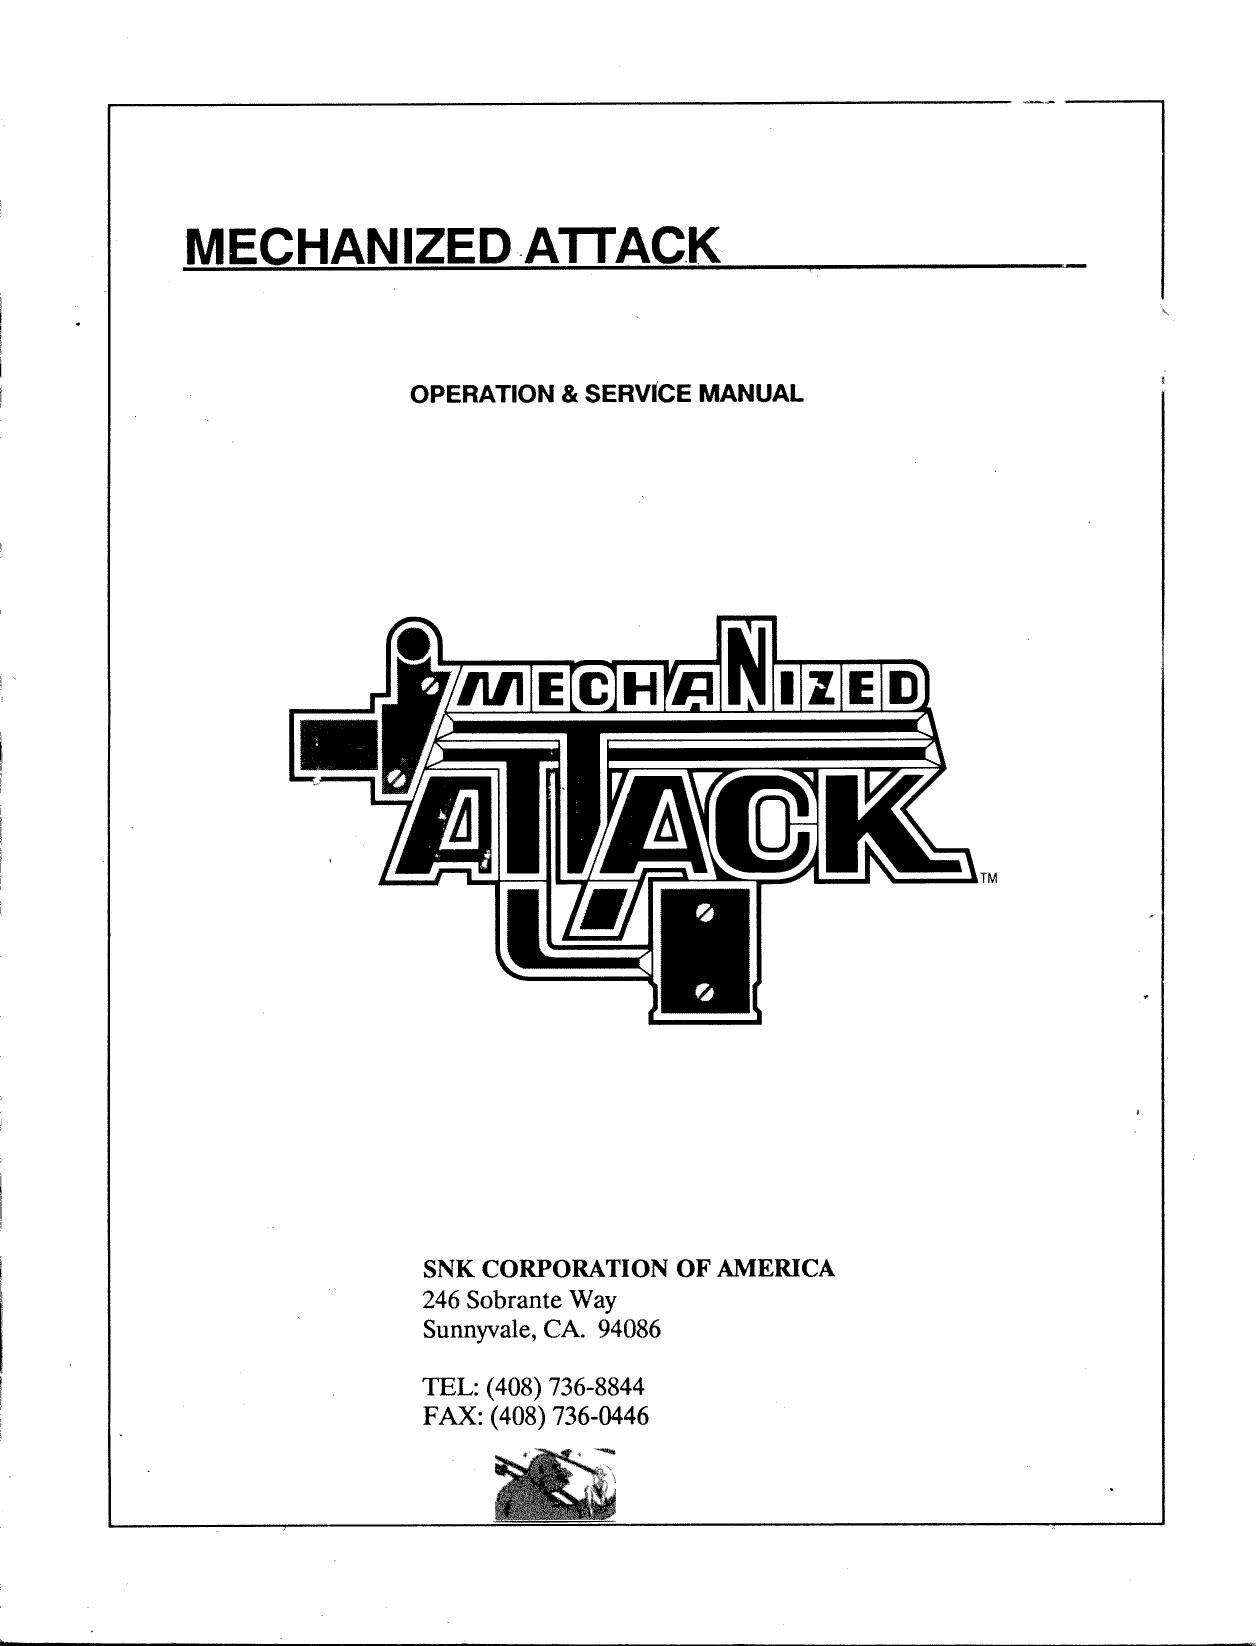 MechAttack Manual